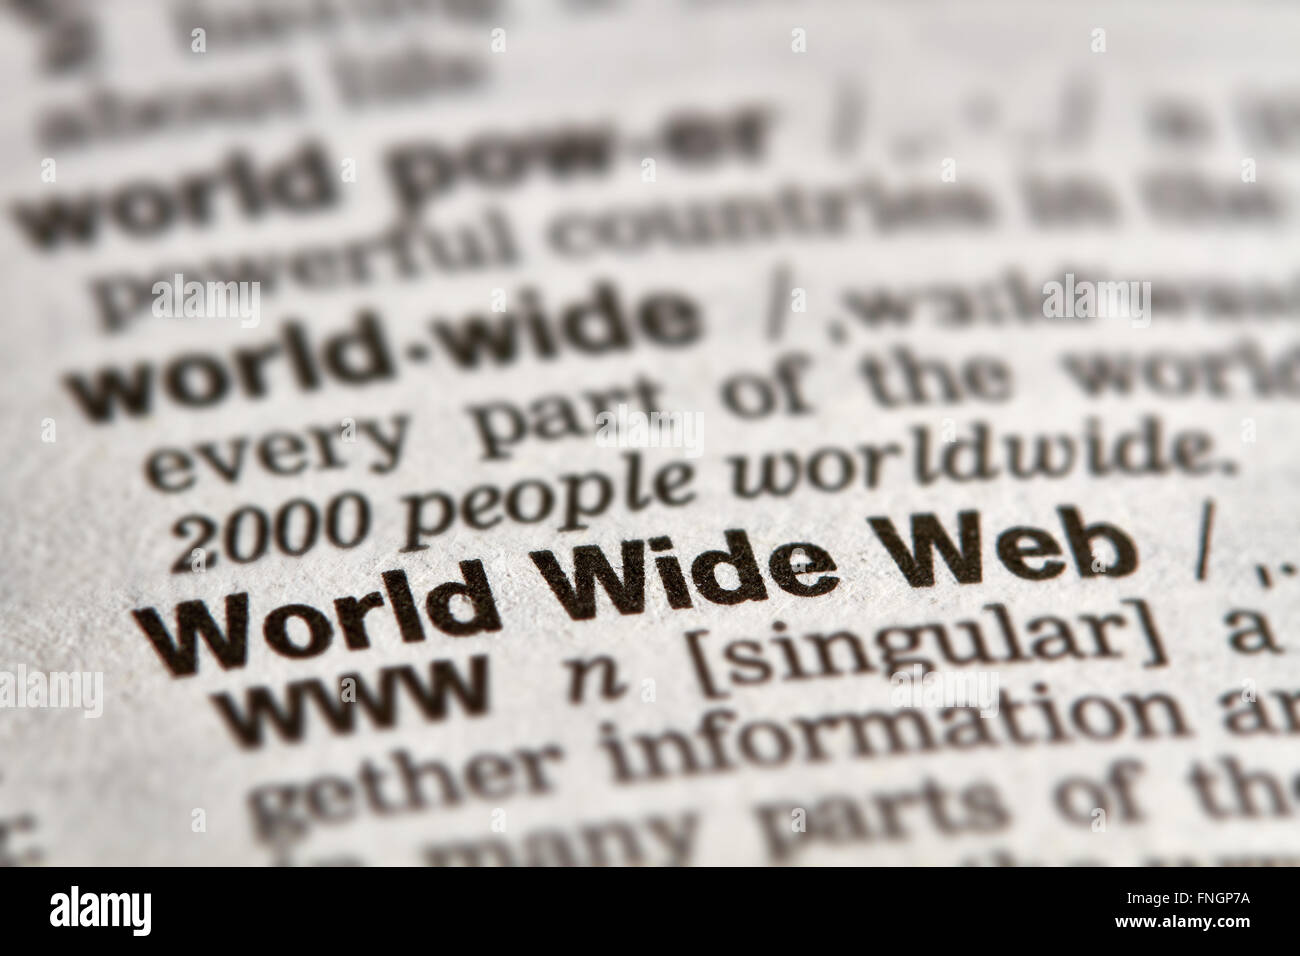 World Wide Web Le mot Texte de définition dans le dictionnaire Page Banque D'Images